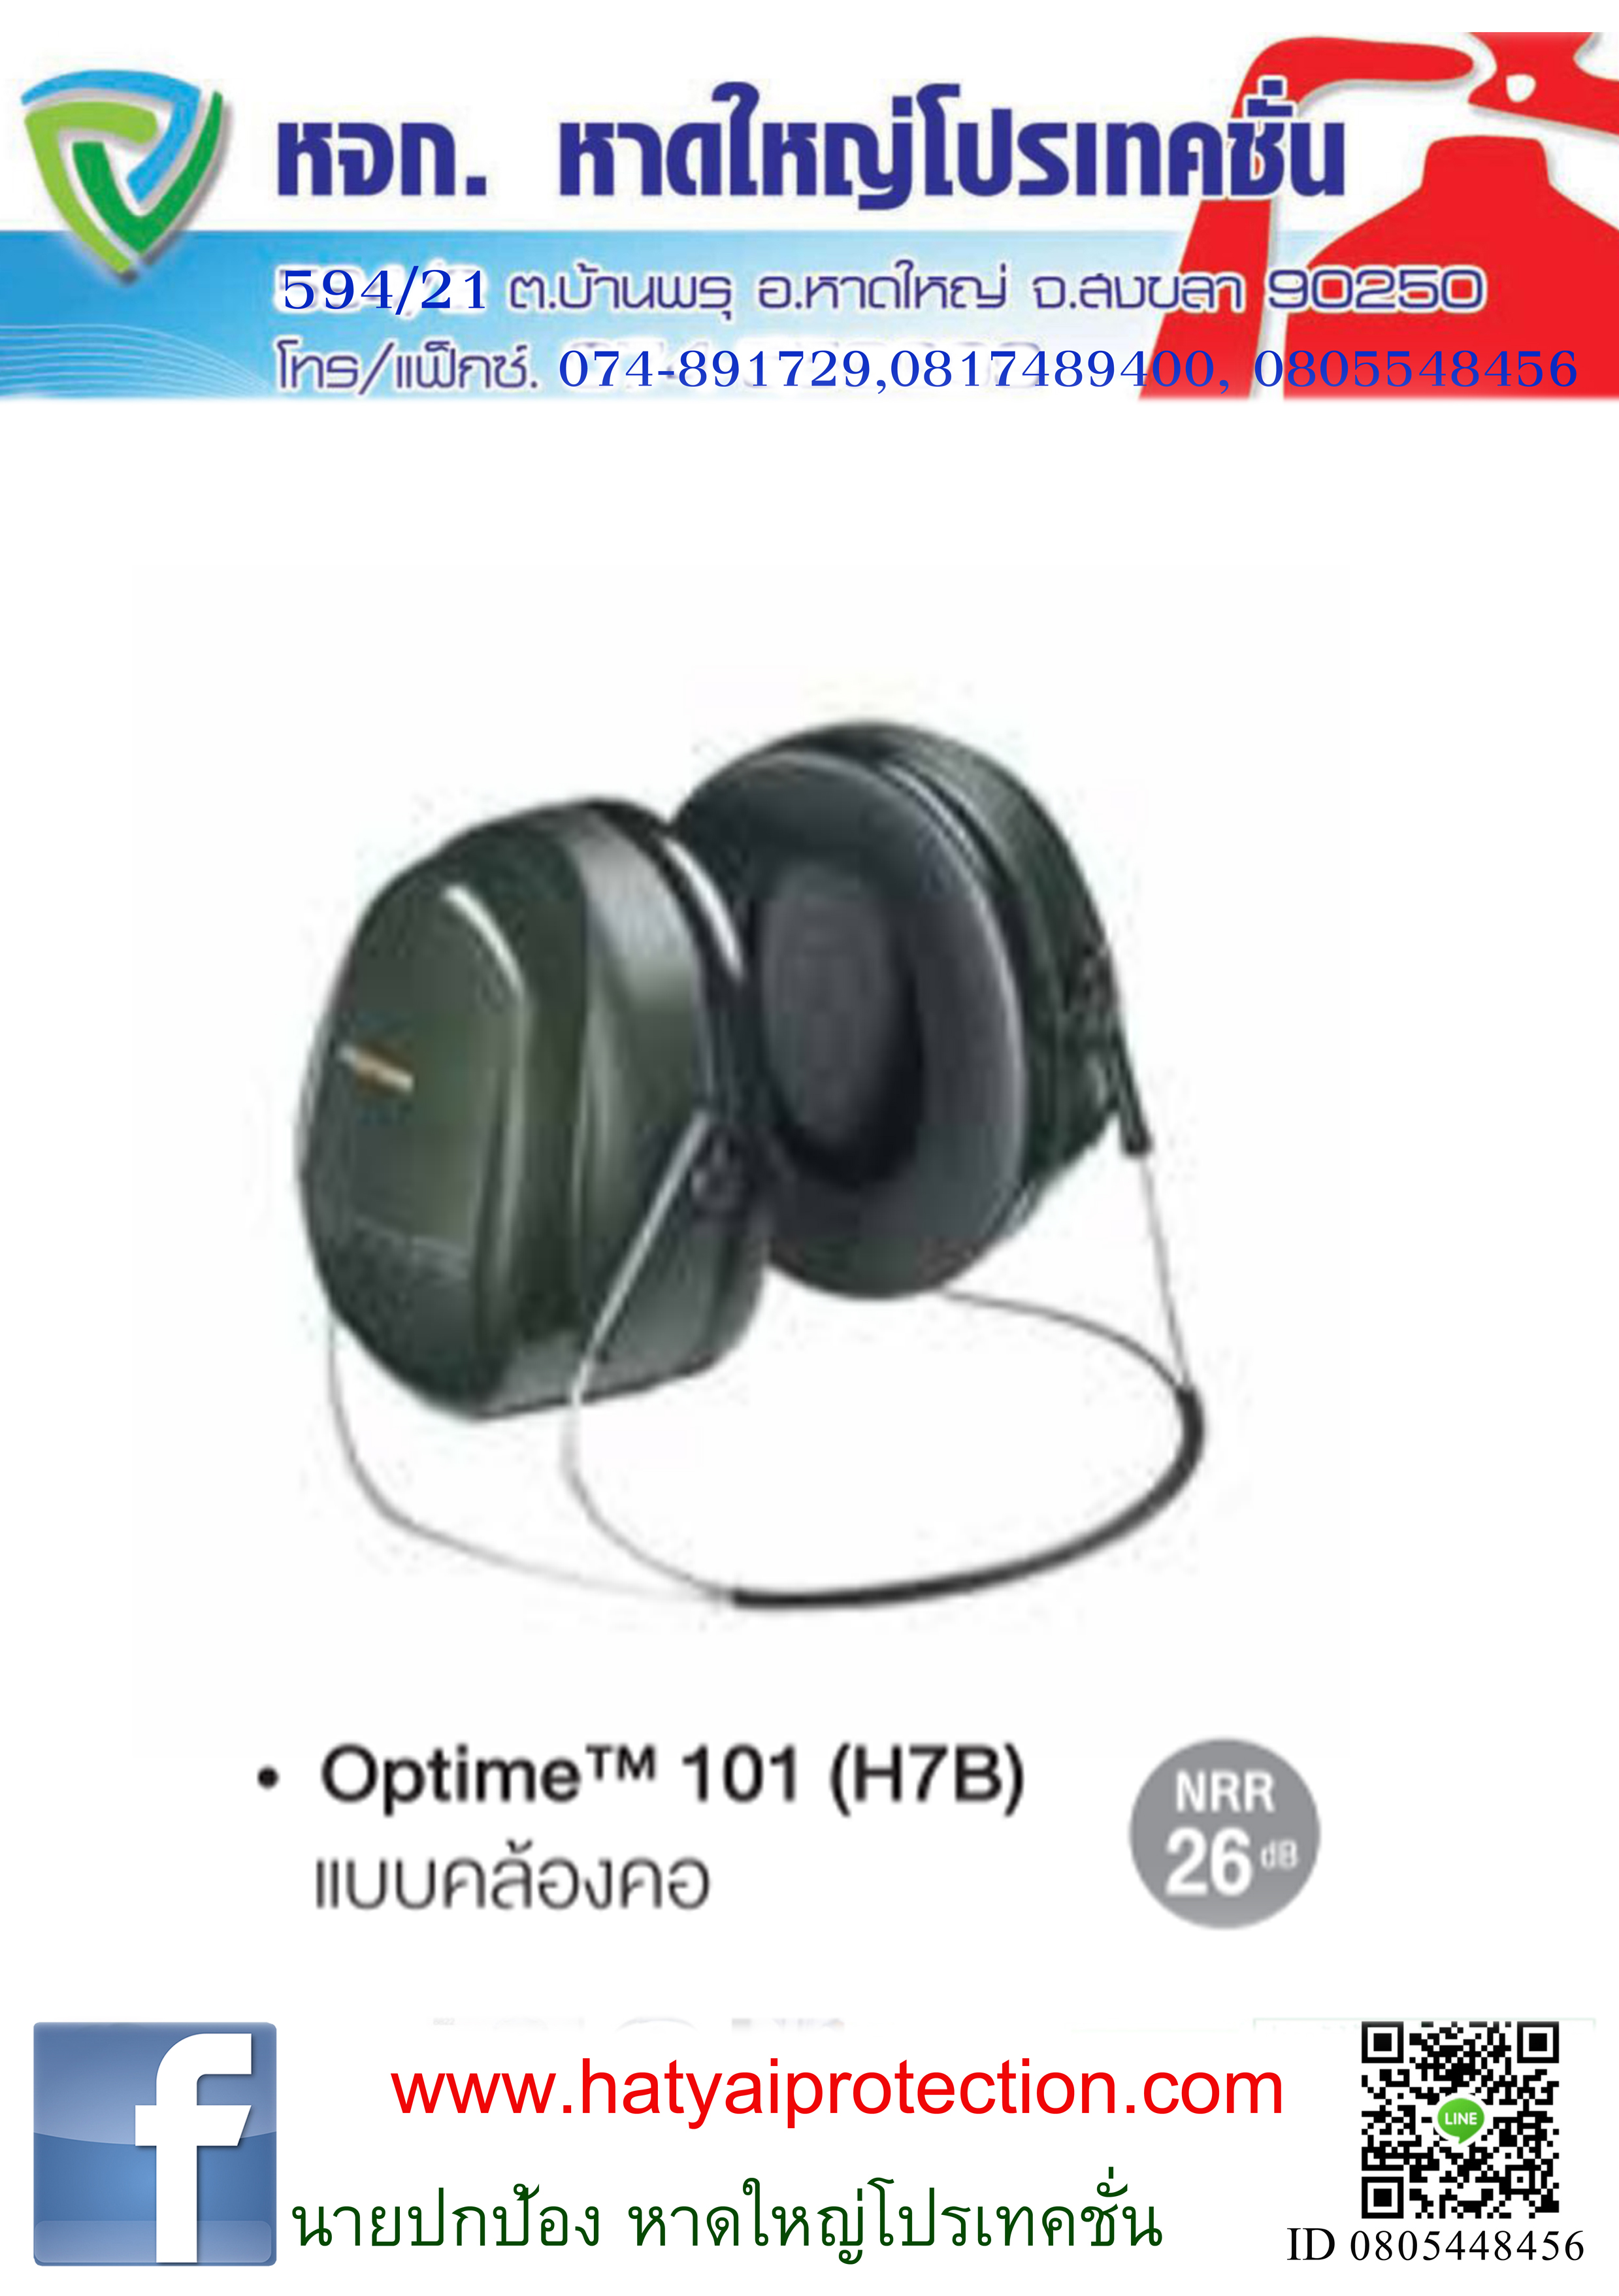 ครอบหู Earmuff OPTIMETM101 ( H7B ) แบบคาดหลังคอ